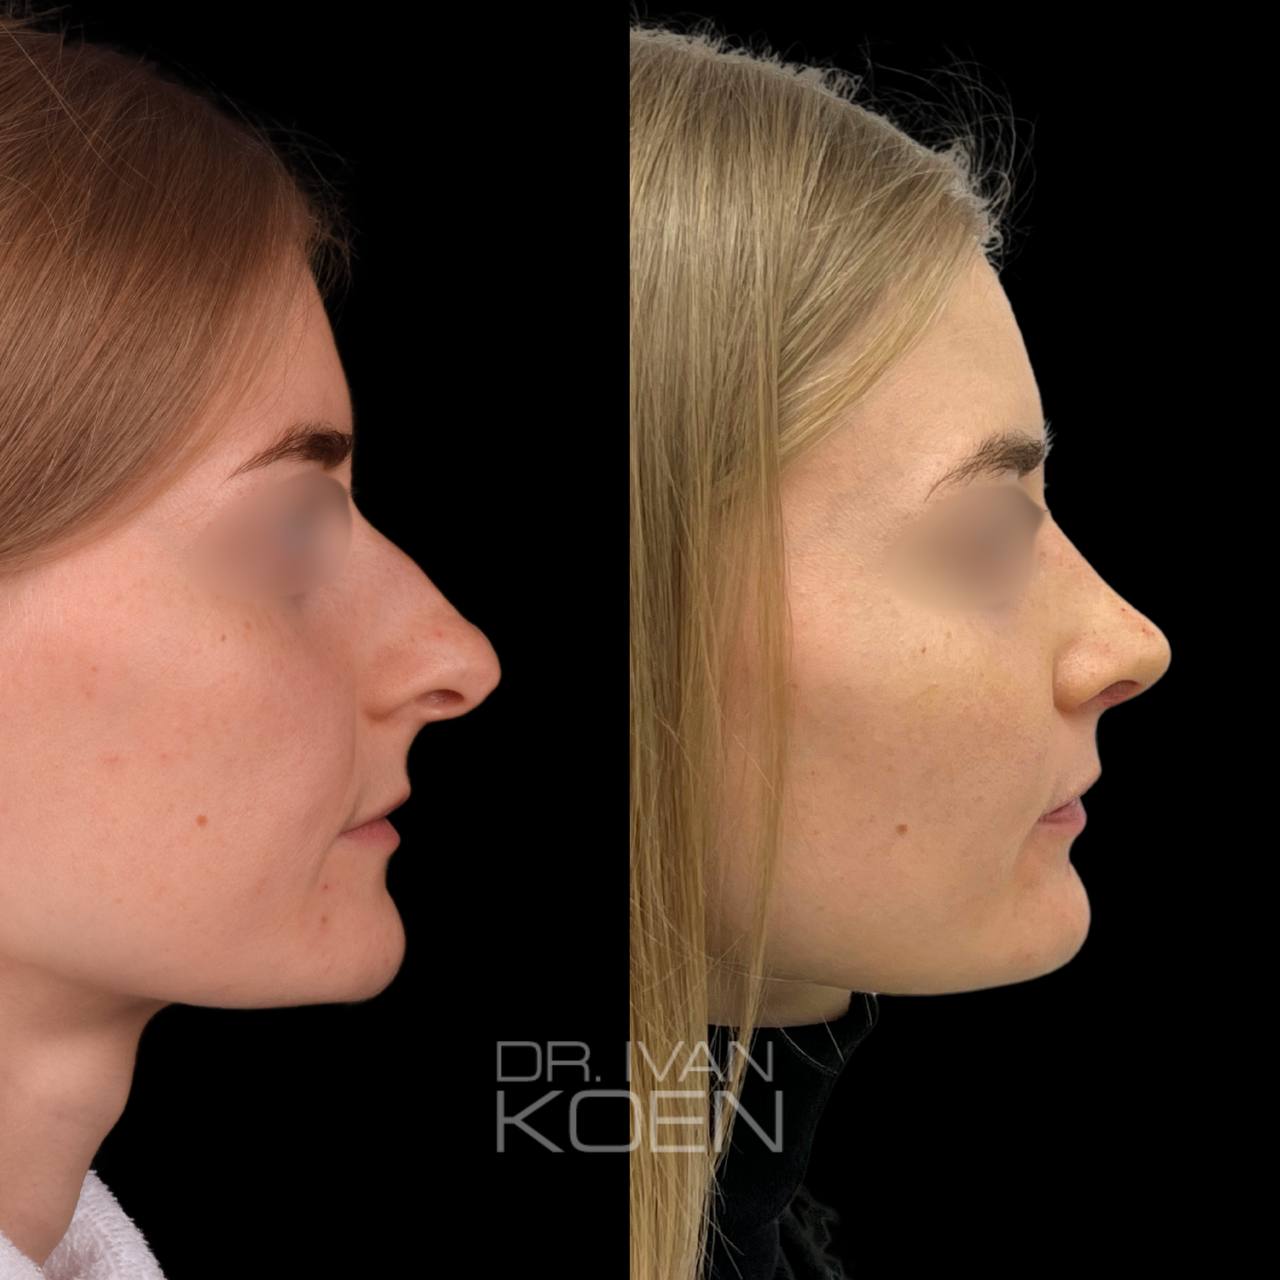 Грамотная подготовка к операции по ринопластике носа: ключевые этапы и рекомендации